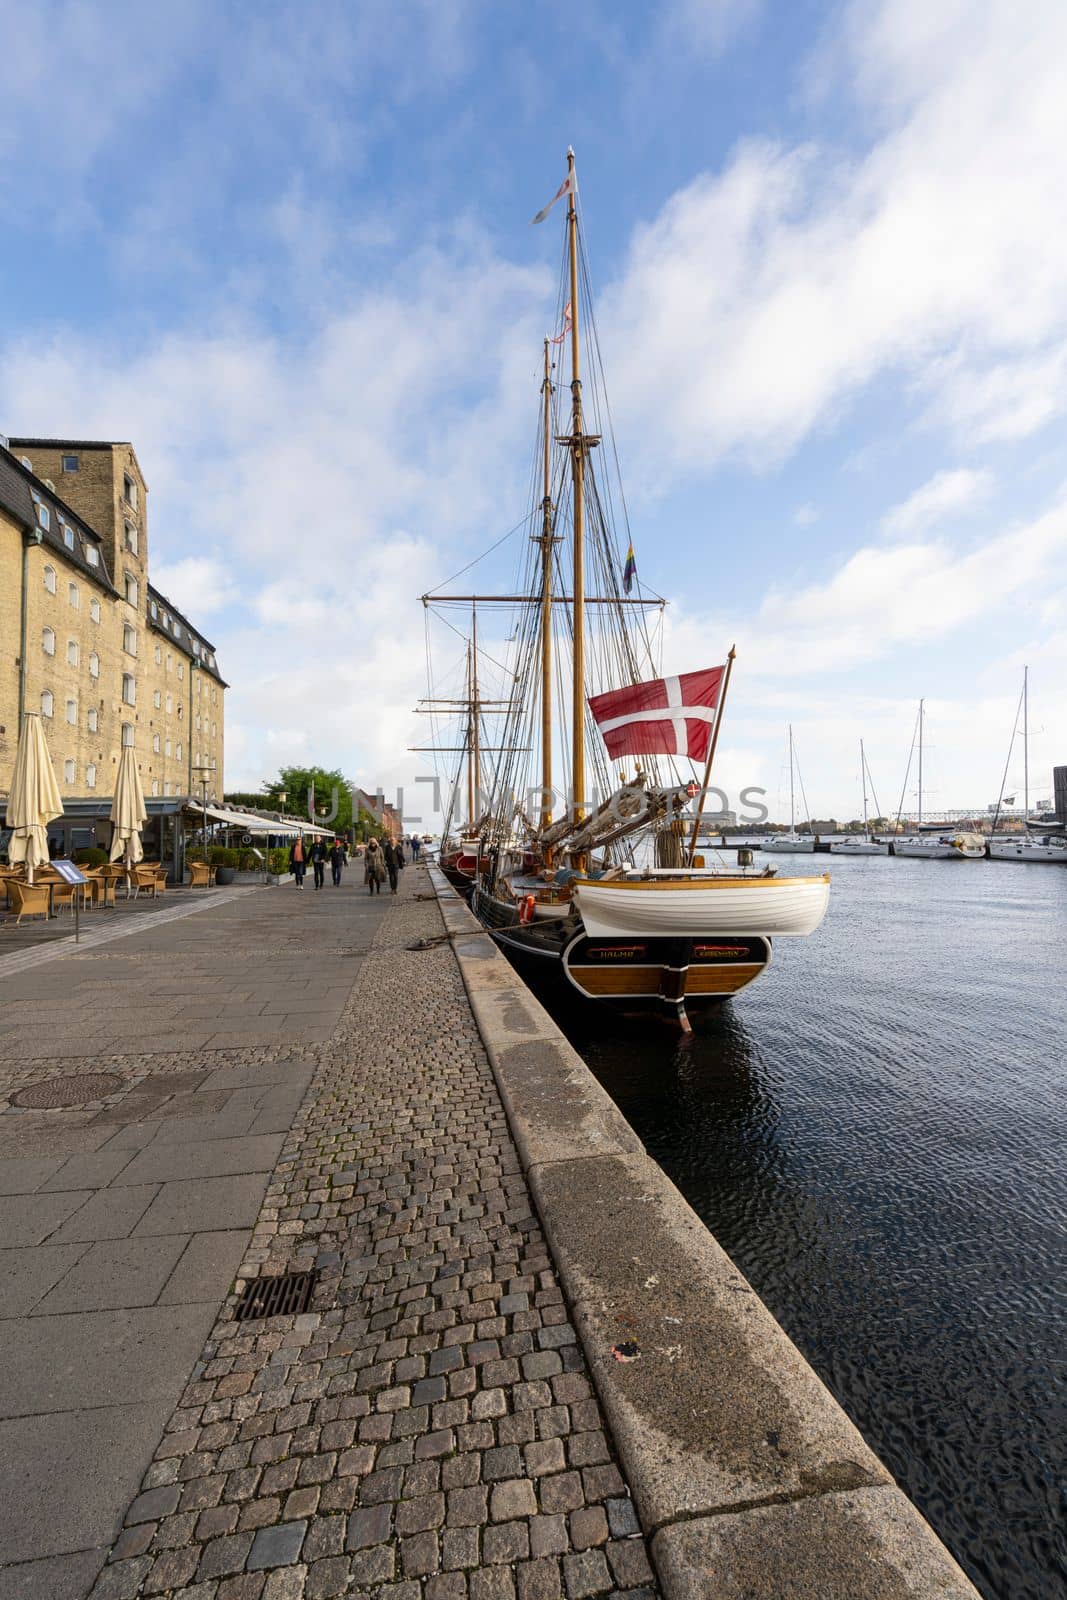 old wooden vessel moored in Copenhagen, Denmark by sergiodv